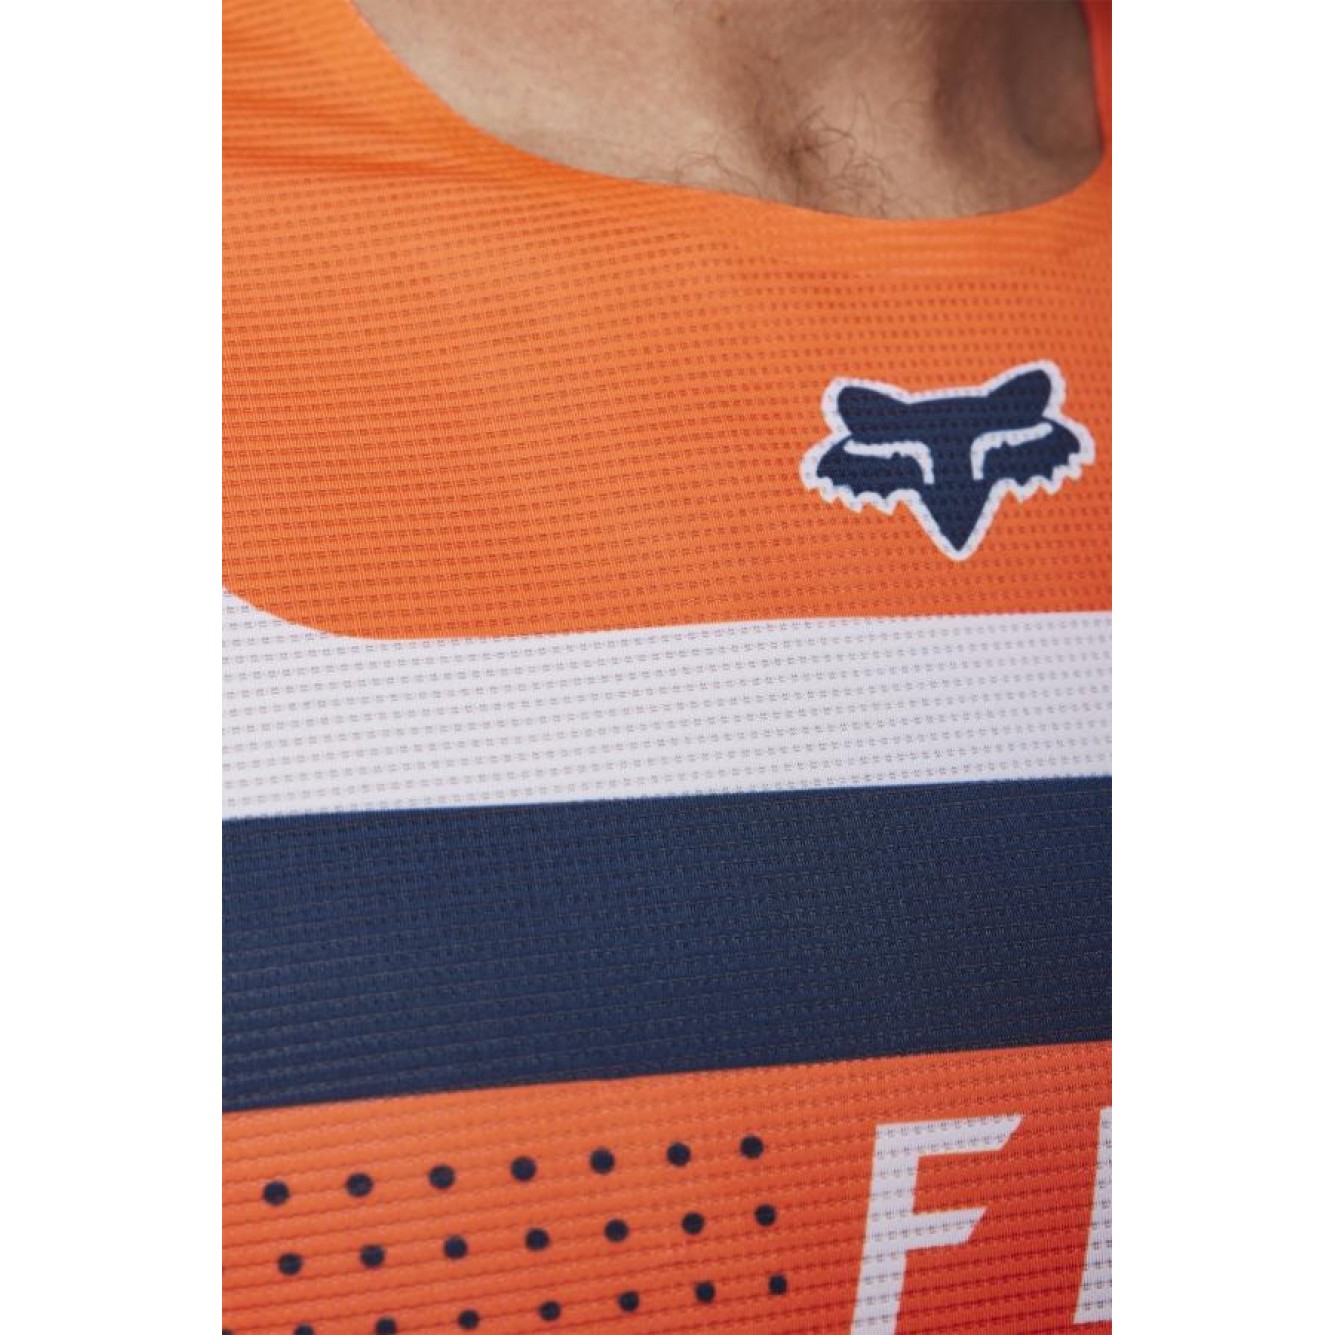 Fox | Cross Shirt Flexair EFEKT Fluor Oranje